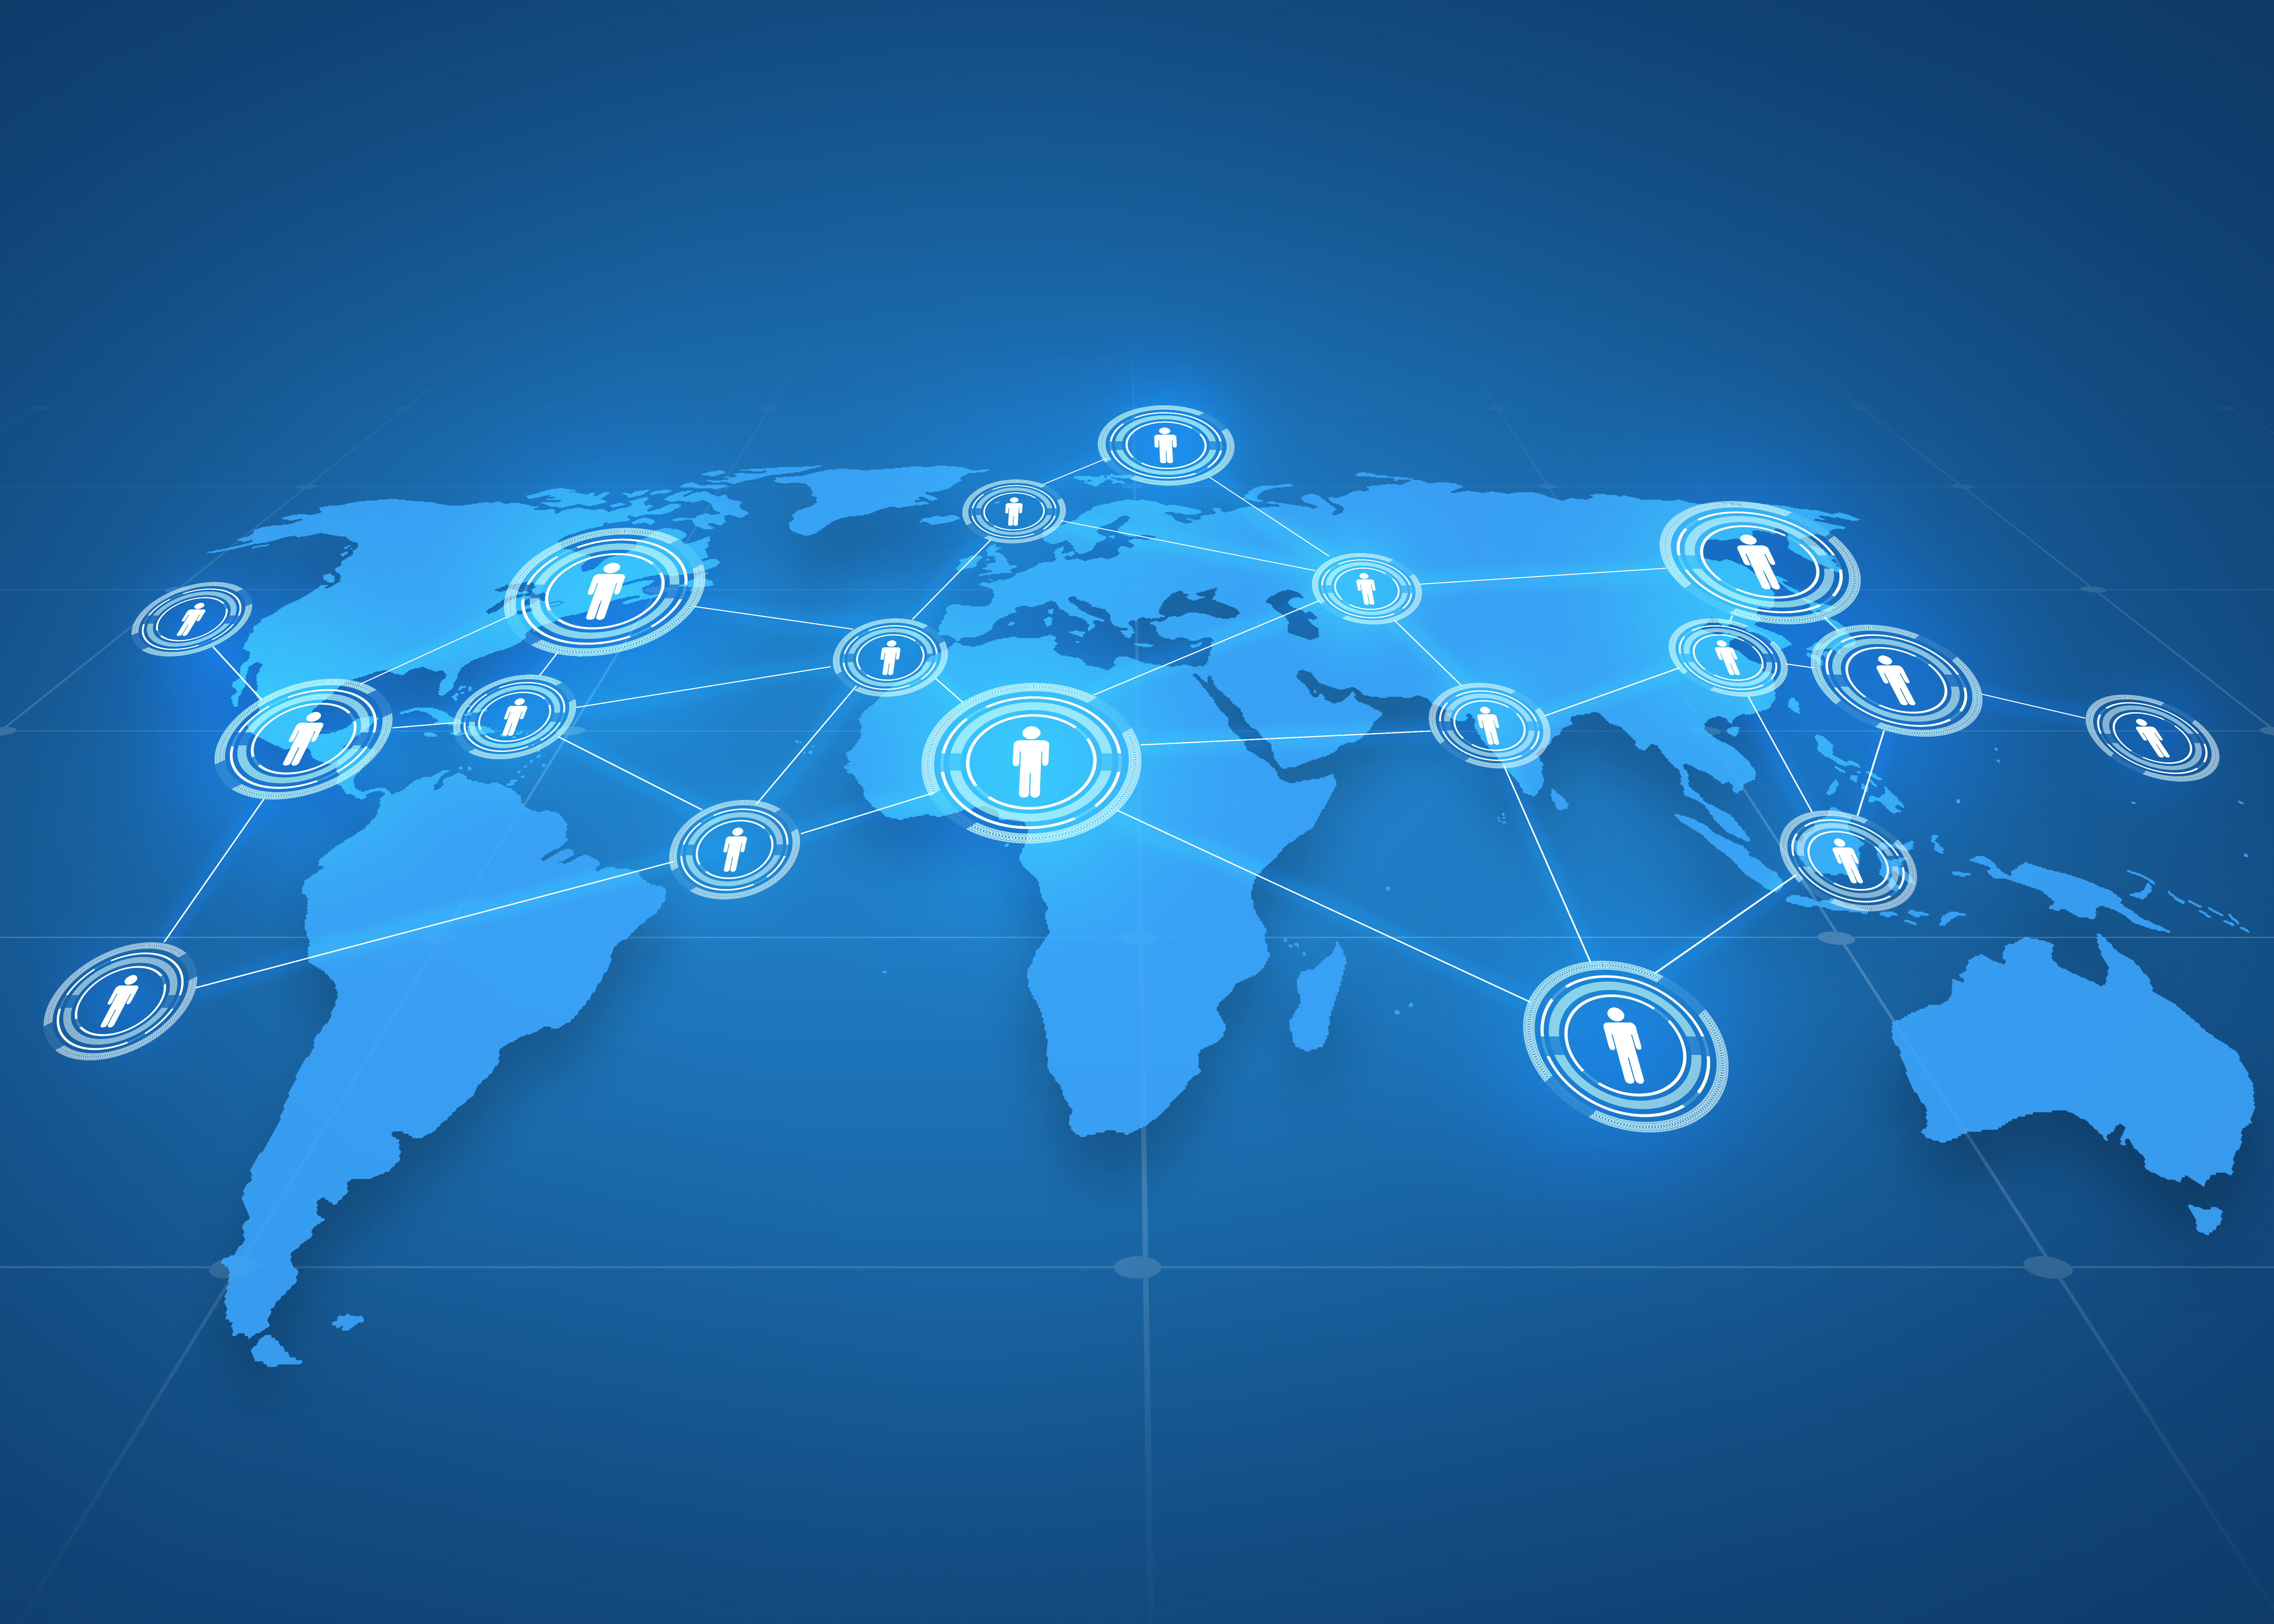 pasaulinio verslo, socialinio tinklo, žiniasklaidos ir technologijų koncepcija - pasaulio žemėlapio projekcija su žmonių piktogramomis mėlyname fone